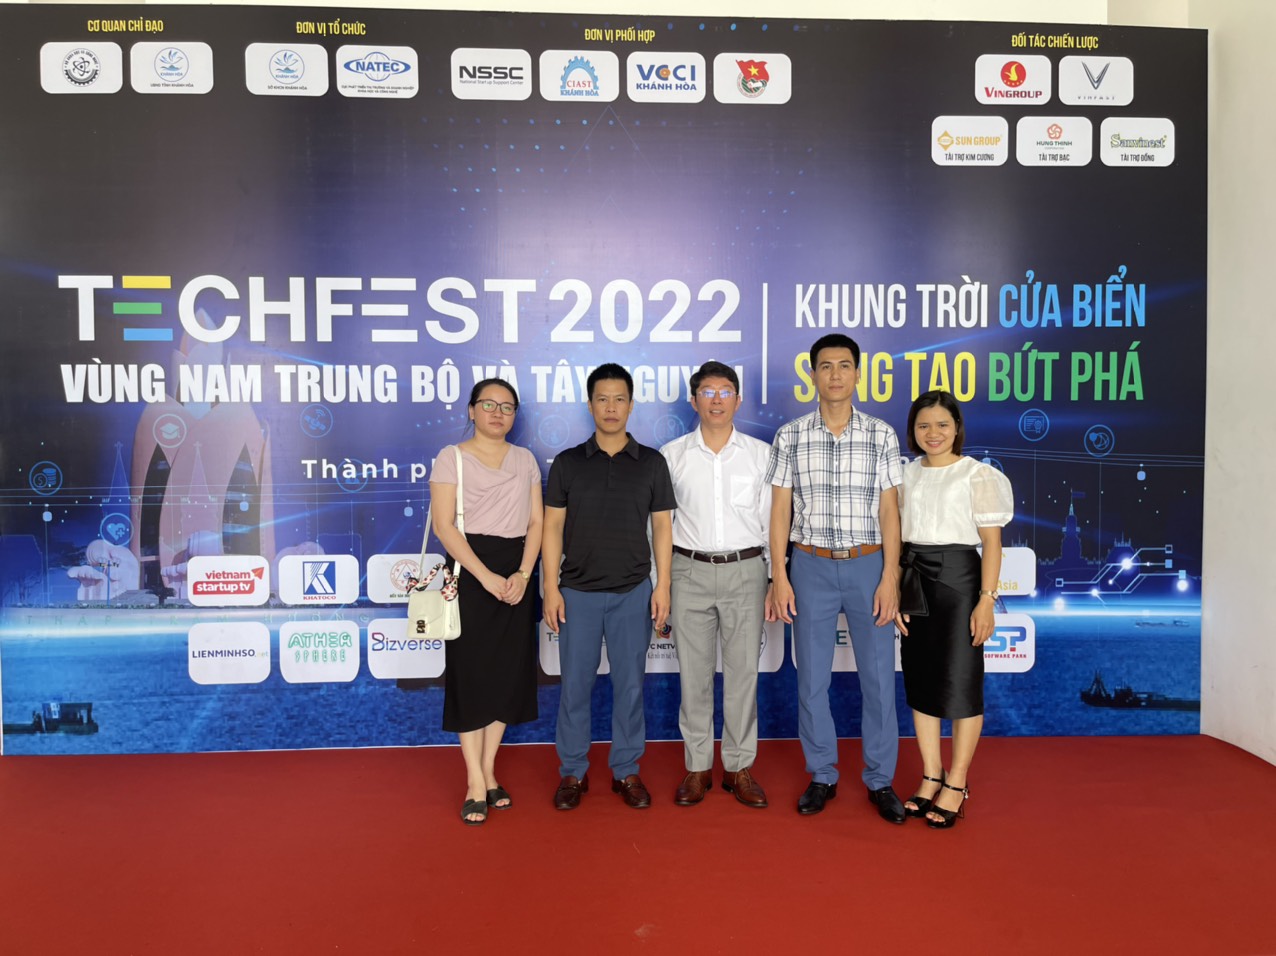 Sở Khoa học và công nghệ Hưng Yên tham gia Techfest 2022 tại Nha Trang với khát vọng sáng tạo, bứt p